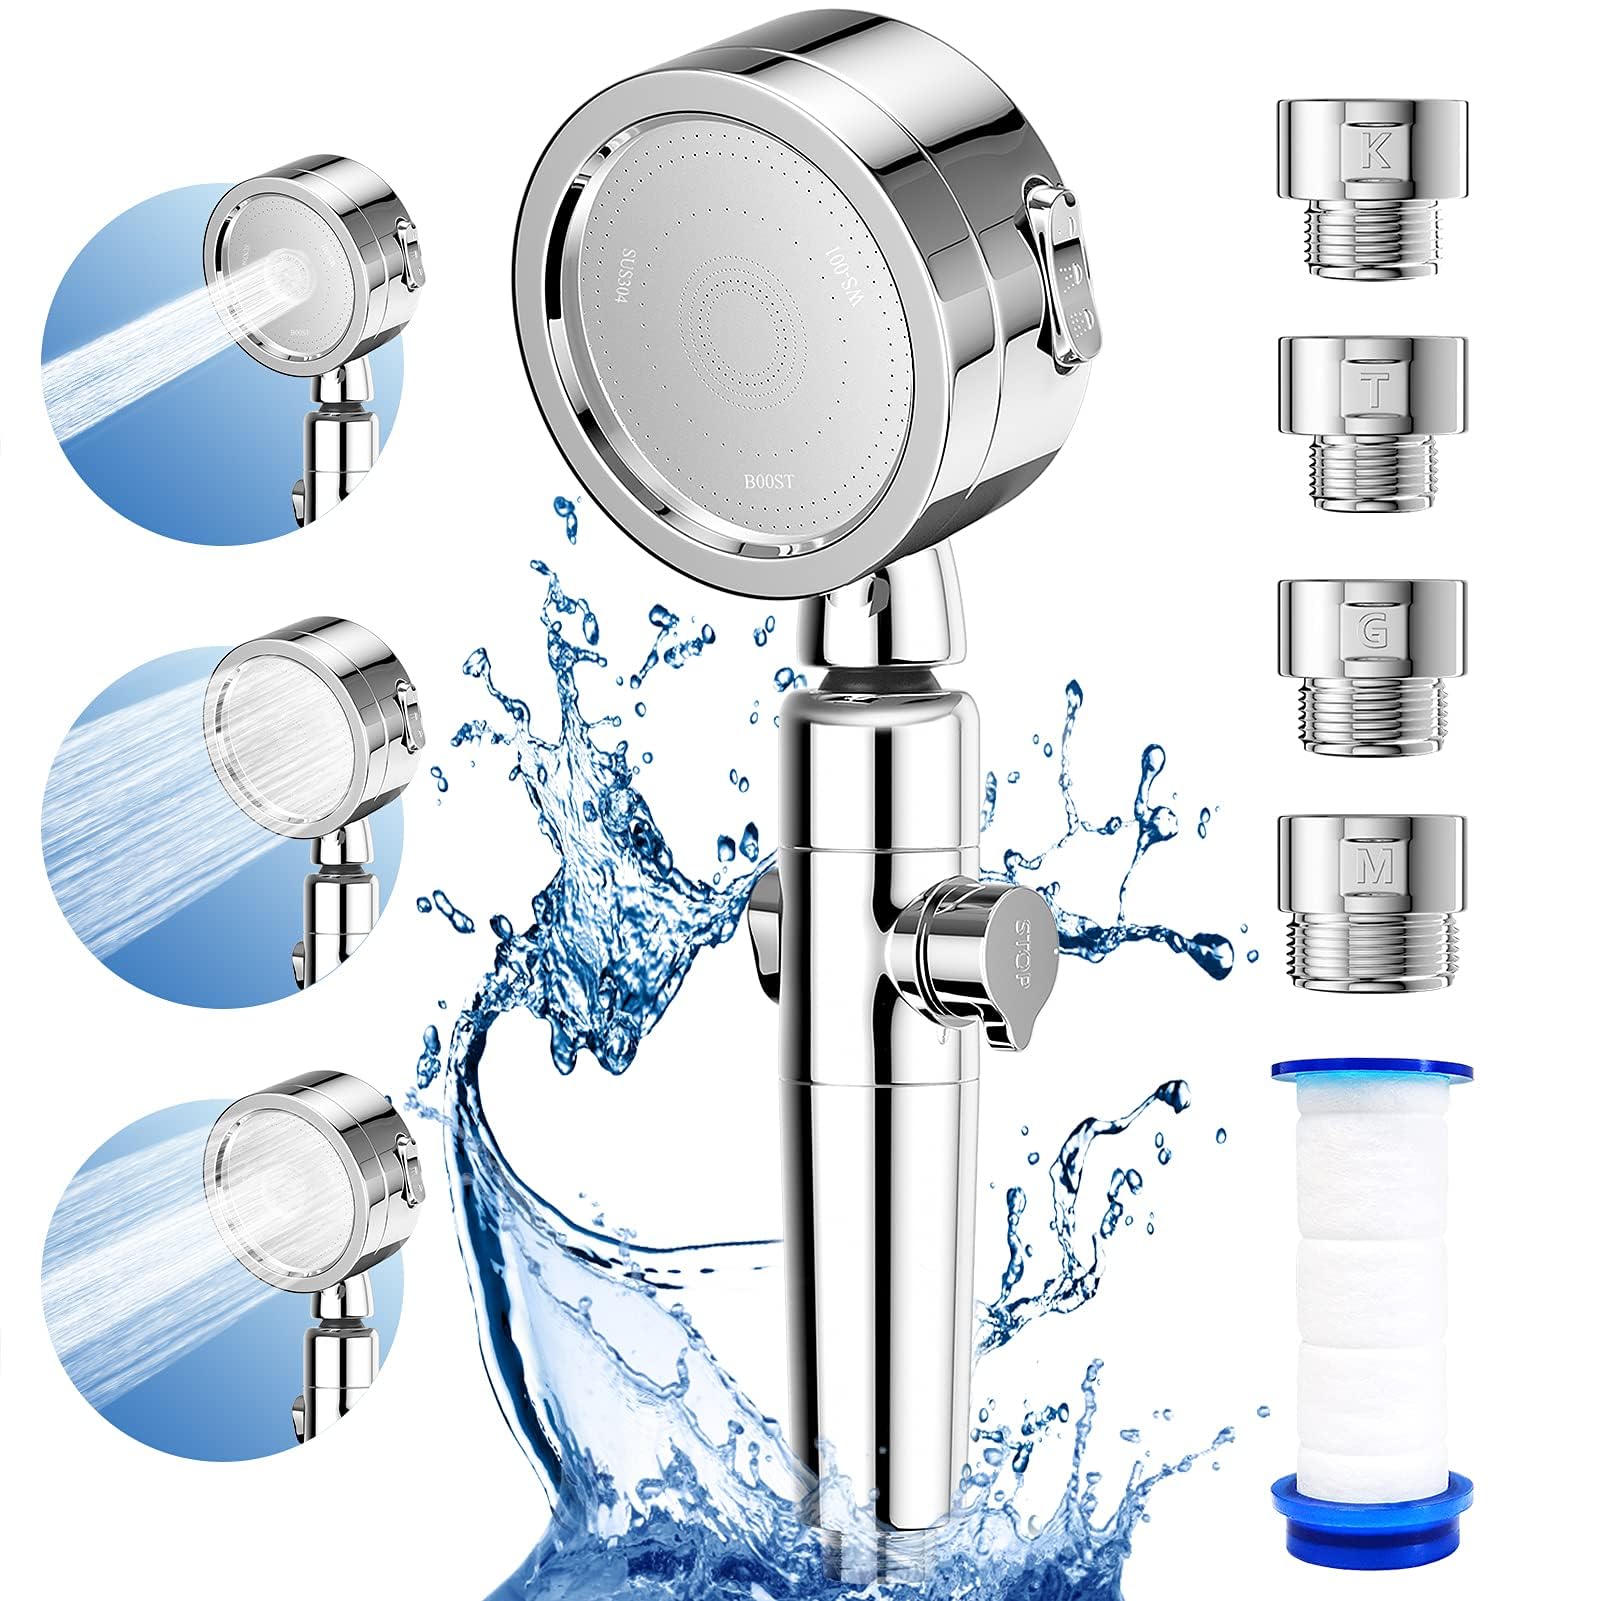 シャワーヘッド 浄水 3ステップモード 分解洗浄 高水圧 シャワーヘッド 360°角度調整 水量・水圧調整 自由に水を止められる シャワーヘ